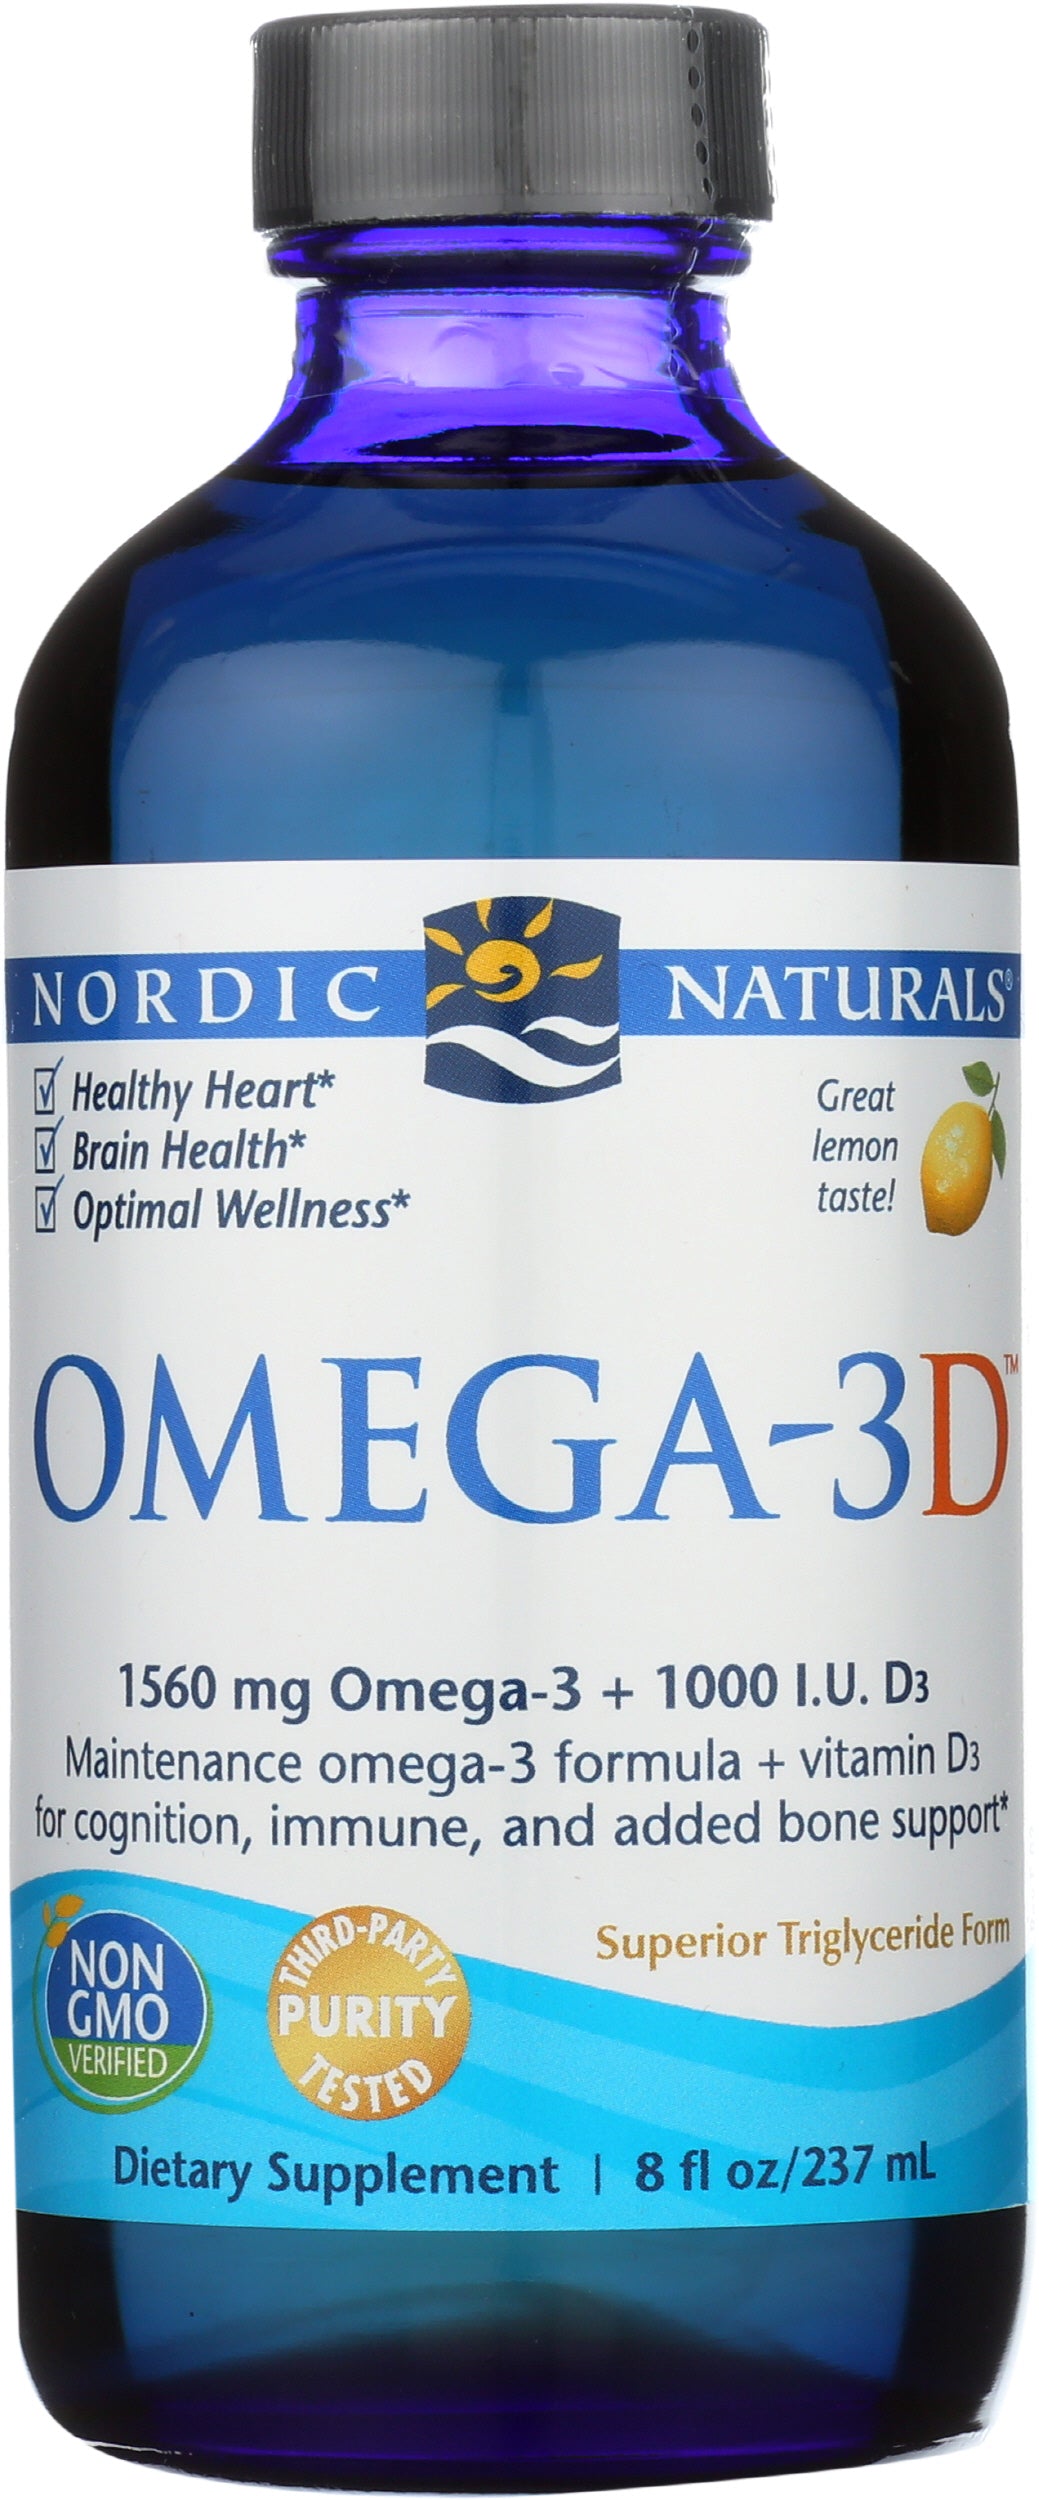 Nordic Naturals Omega-3D 1560 mg + 1000 IU Vitamin D3 8 fl oz